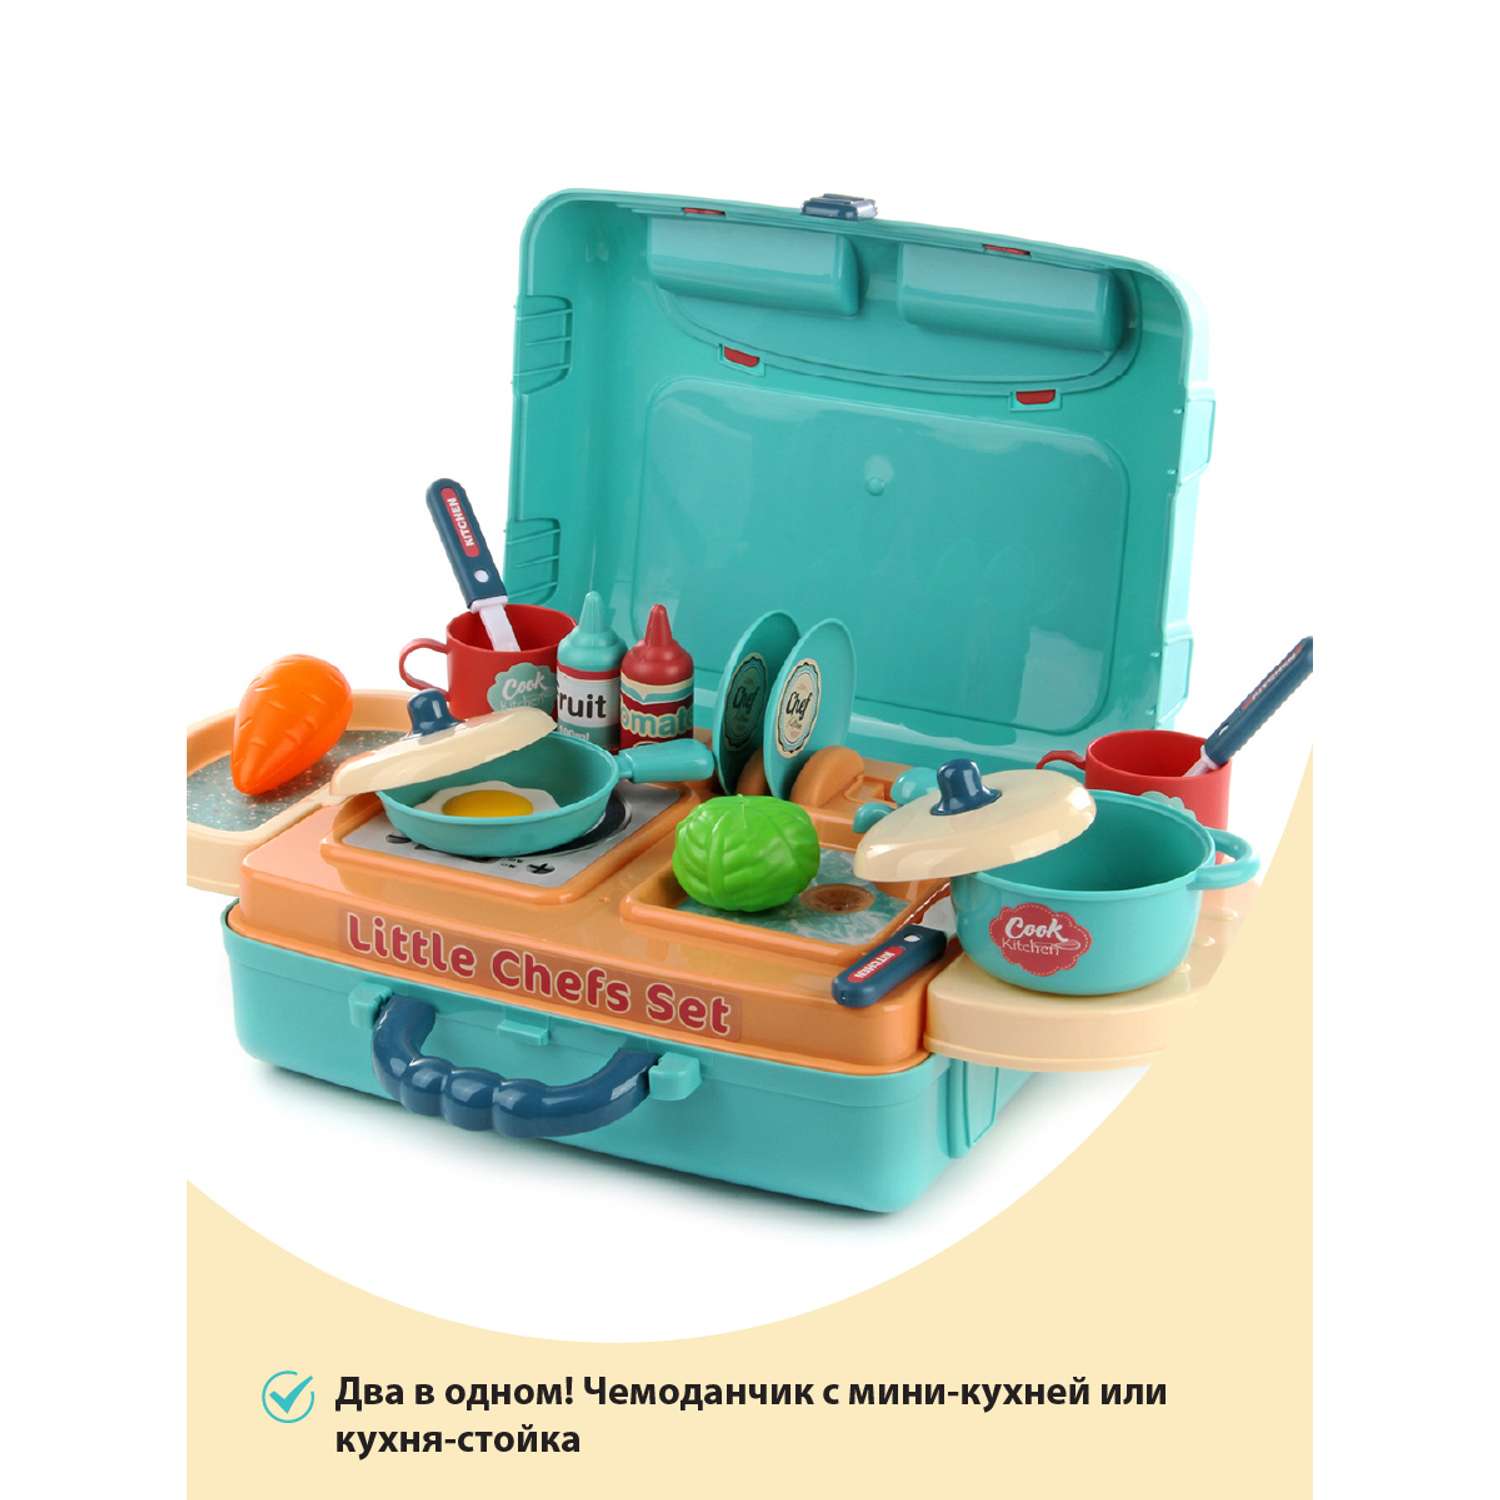 Детская кухня Veld Co 2 в 1 стойка или миникухня на чемодане плита кран посуда продукты - фото 2